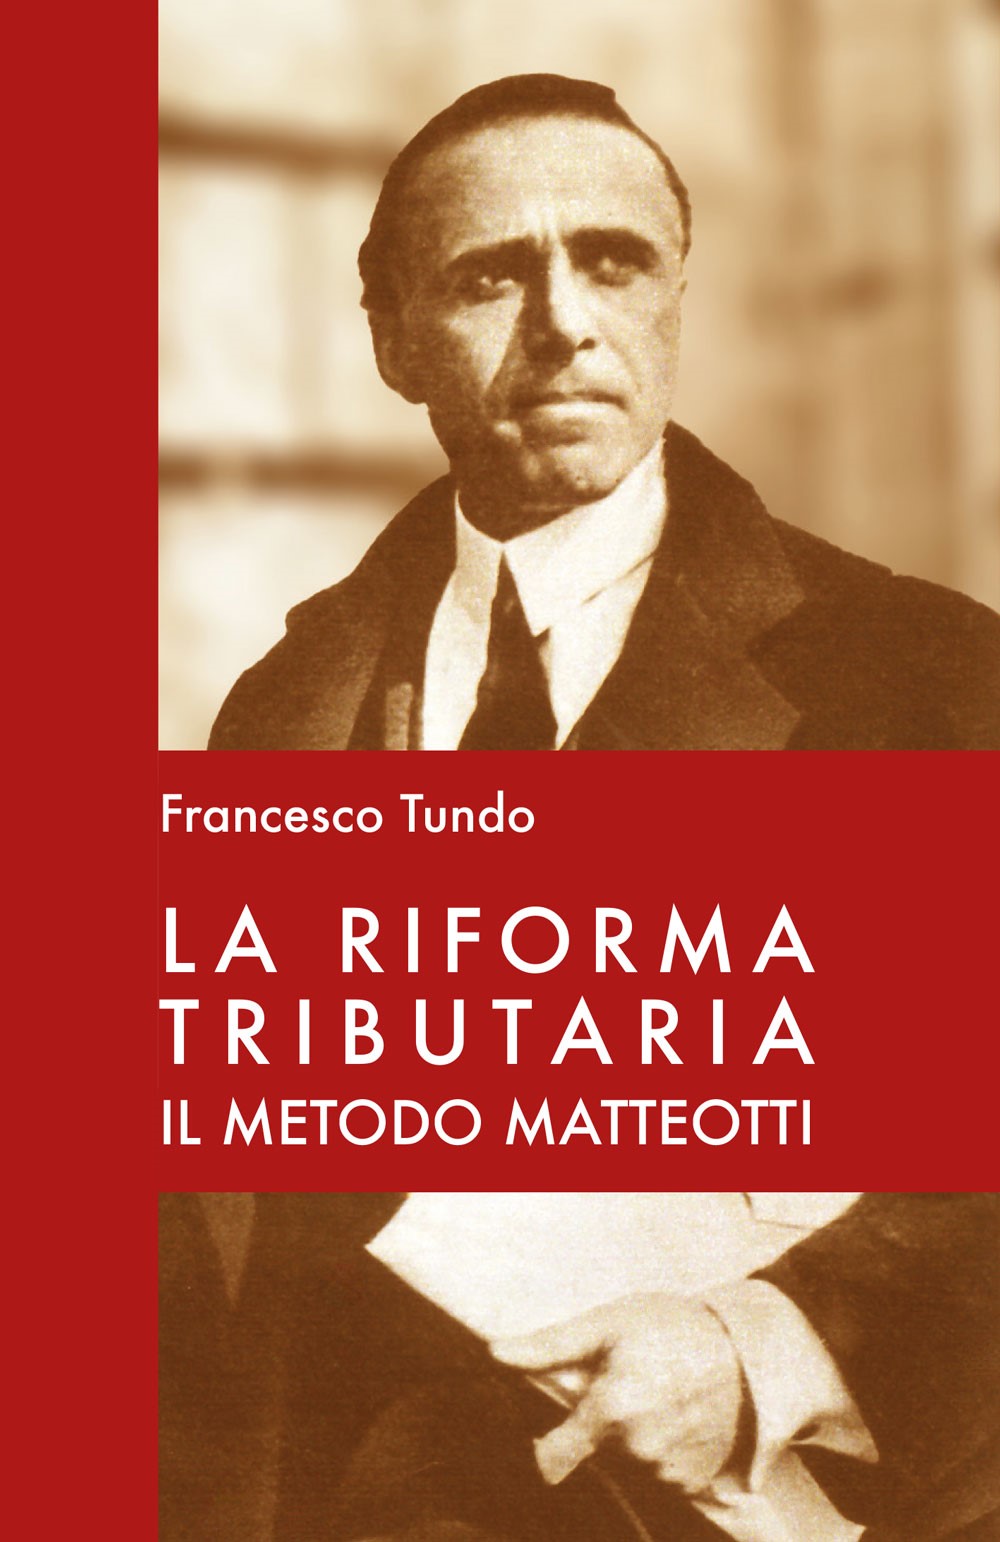 La riforma tributaria - Bologna University Press